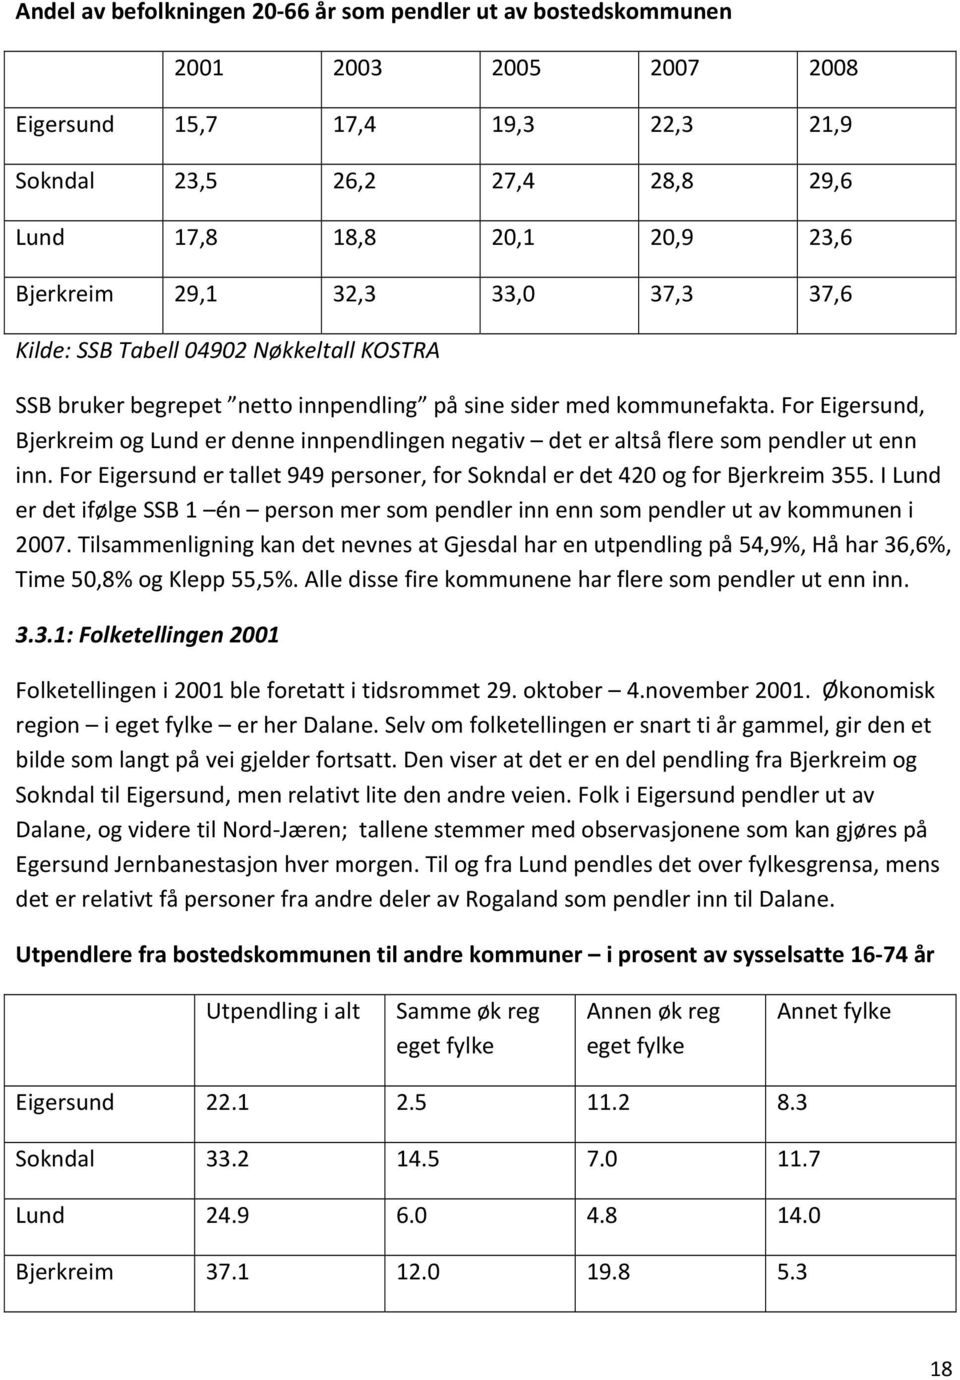 For Eigersund, Bjerkreim og Lund er denne innpendlingen negativ det er altså flere som pendler ut enn inn. For Eigersund er tallet 949 personer, for Sokndal er det 420 og for Bjerkreim 355.